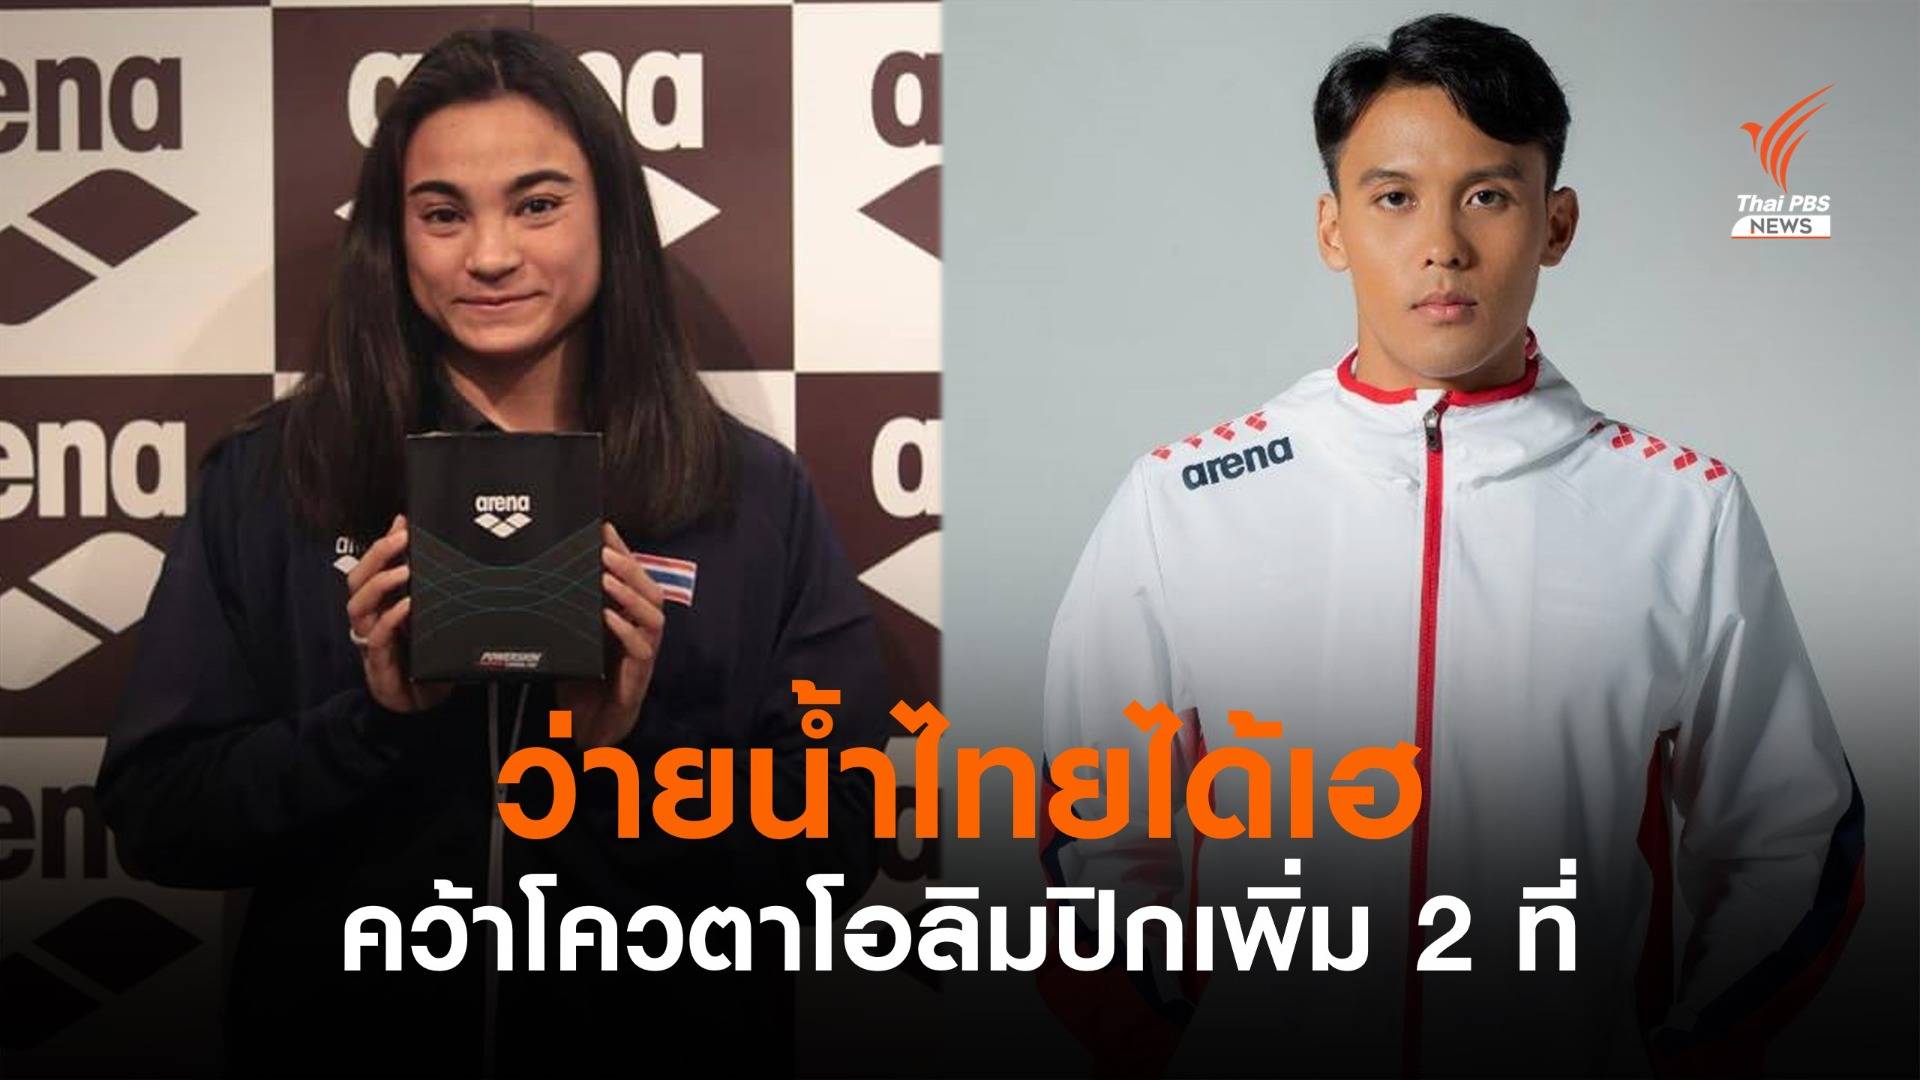 ว่ายน้ำไทยได้ข่าวดี คว้าตั๋วโอลิมปิก2ใบจาก "เจนจิรา-นวพรรษ"